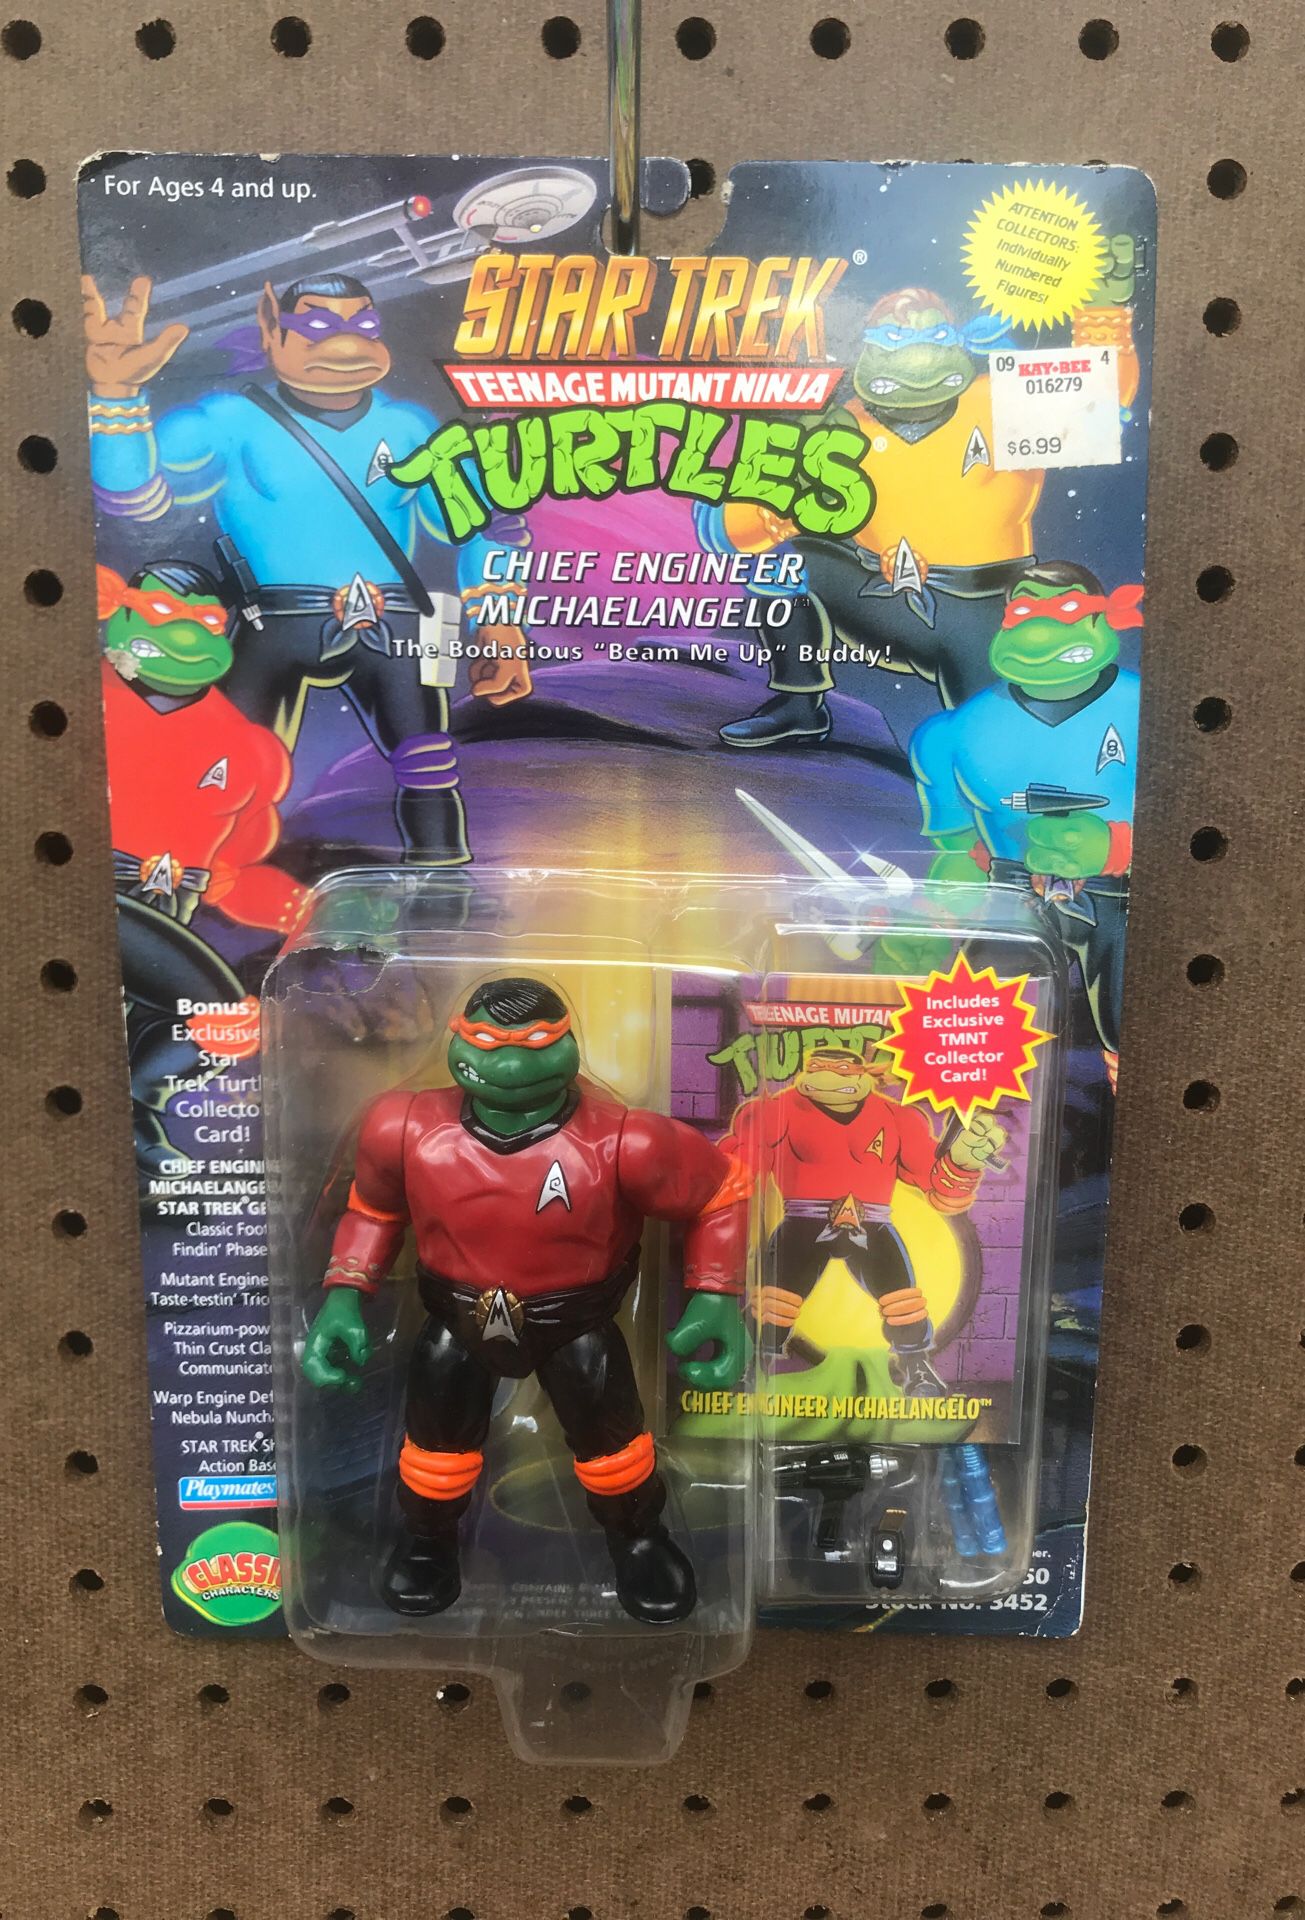 Star Trek Teenage Mutant Ninja Turtles